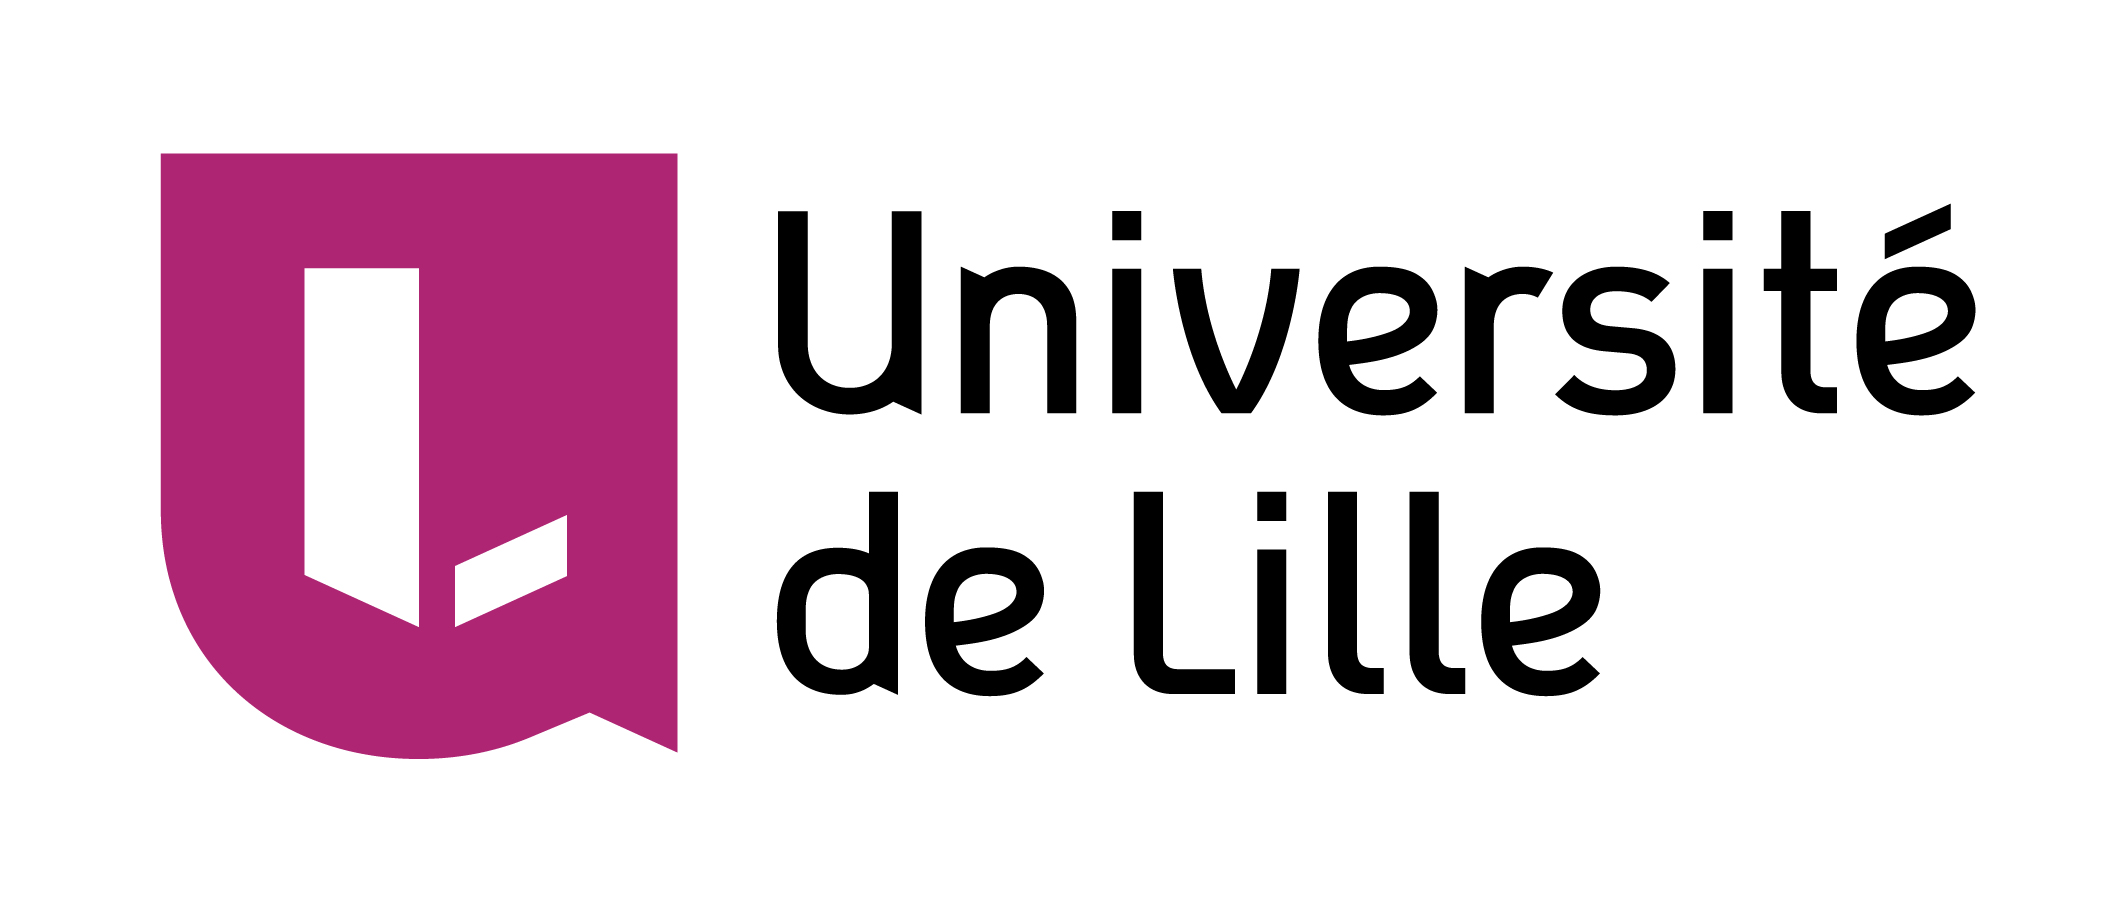 Université de Lille 
Master Mathématiques et Applications